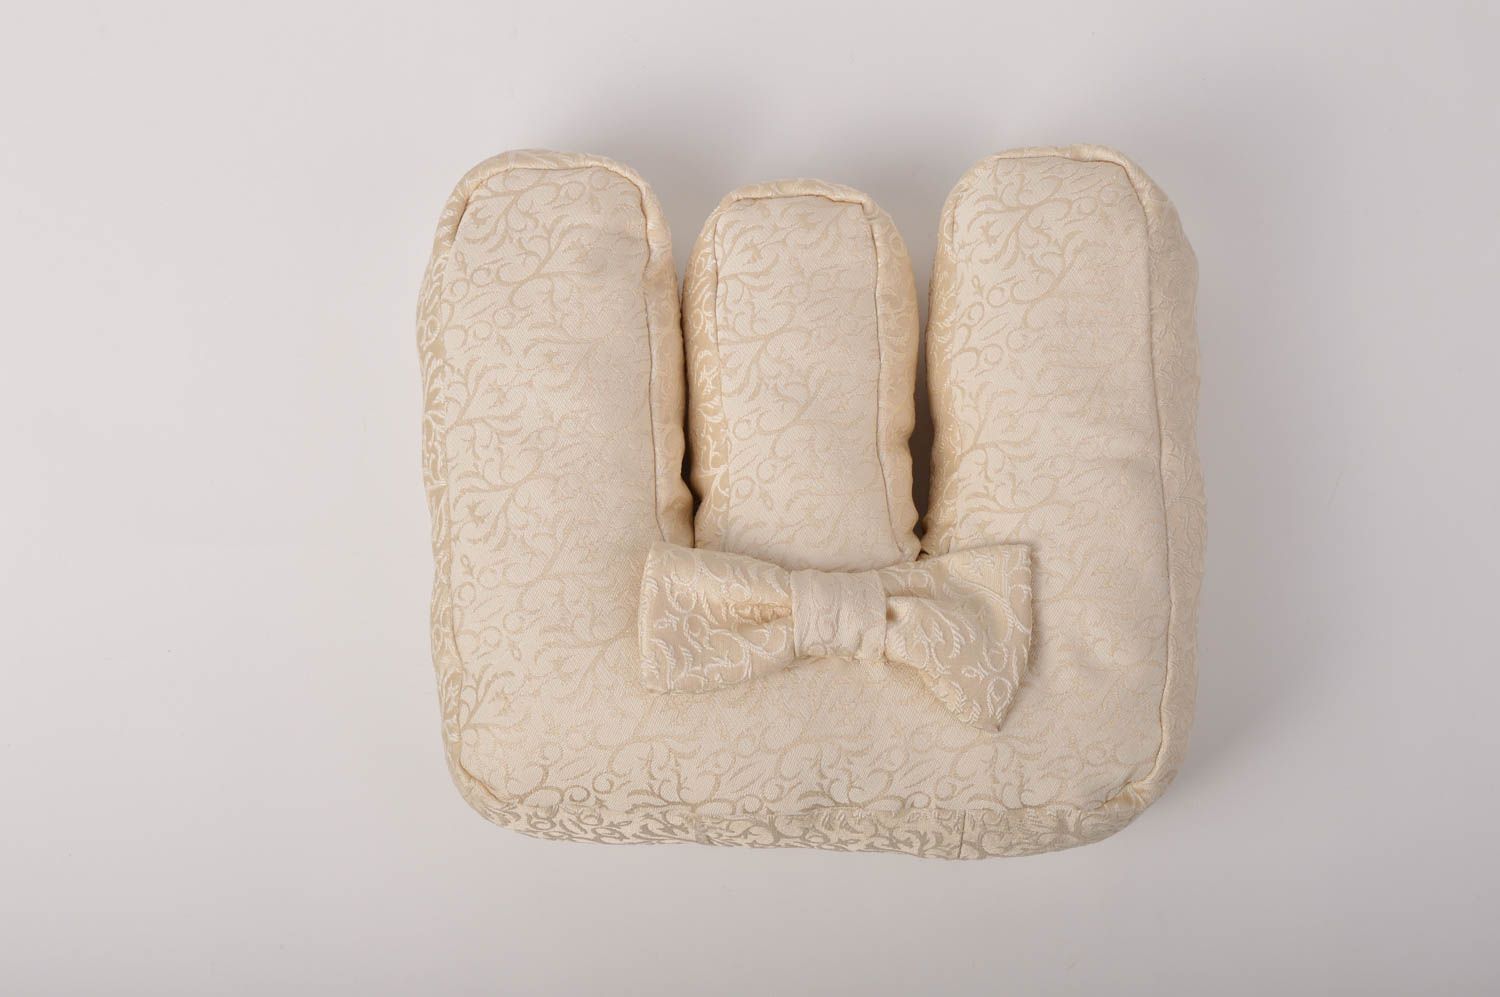 Декоративная подушка ручной работы подушка-буква из жаккарда мягкая буква Ш фото 3